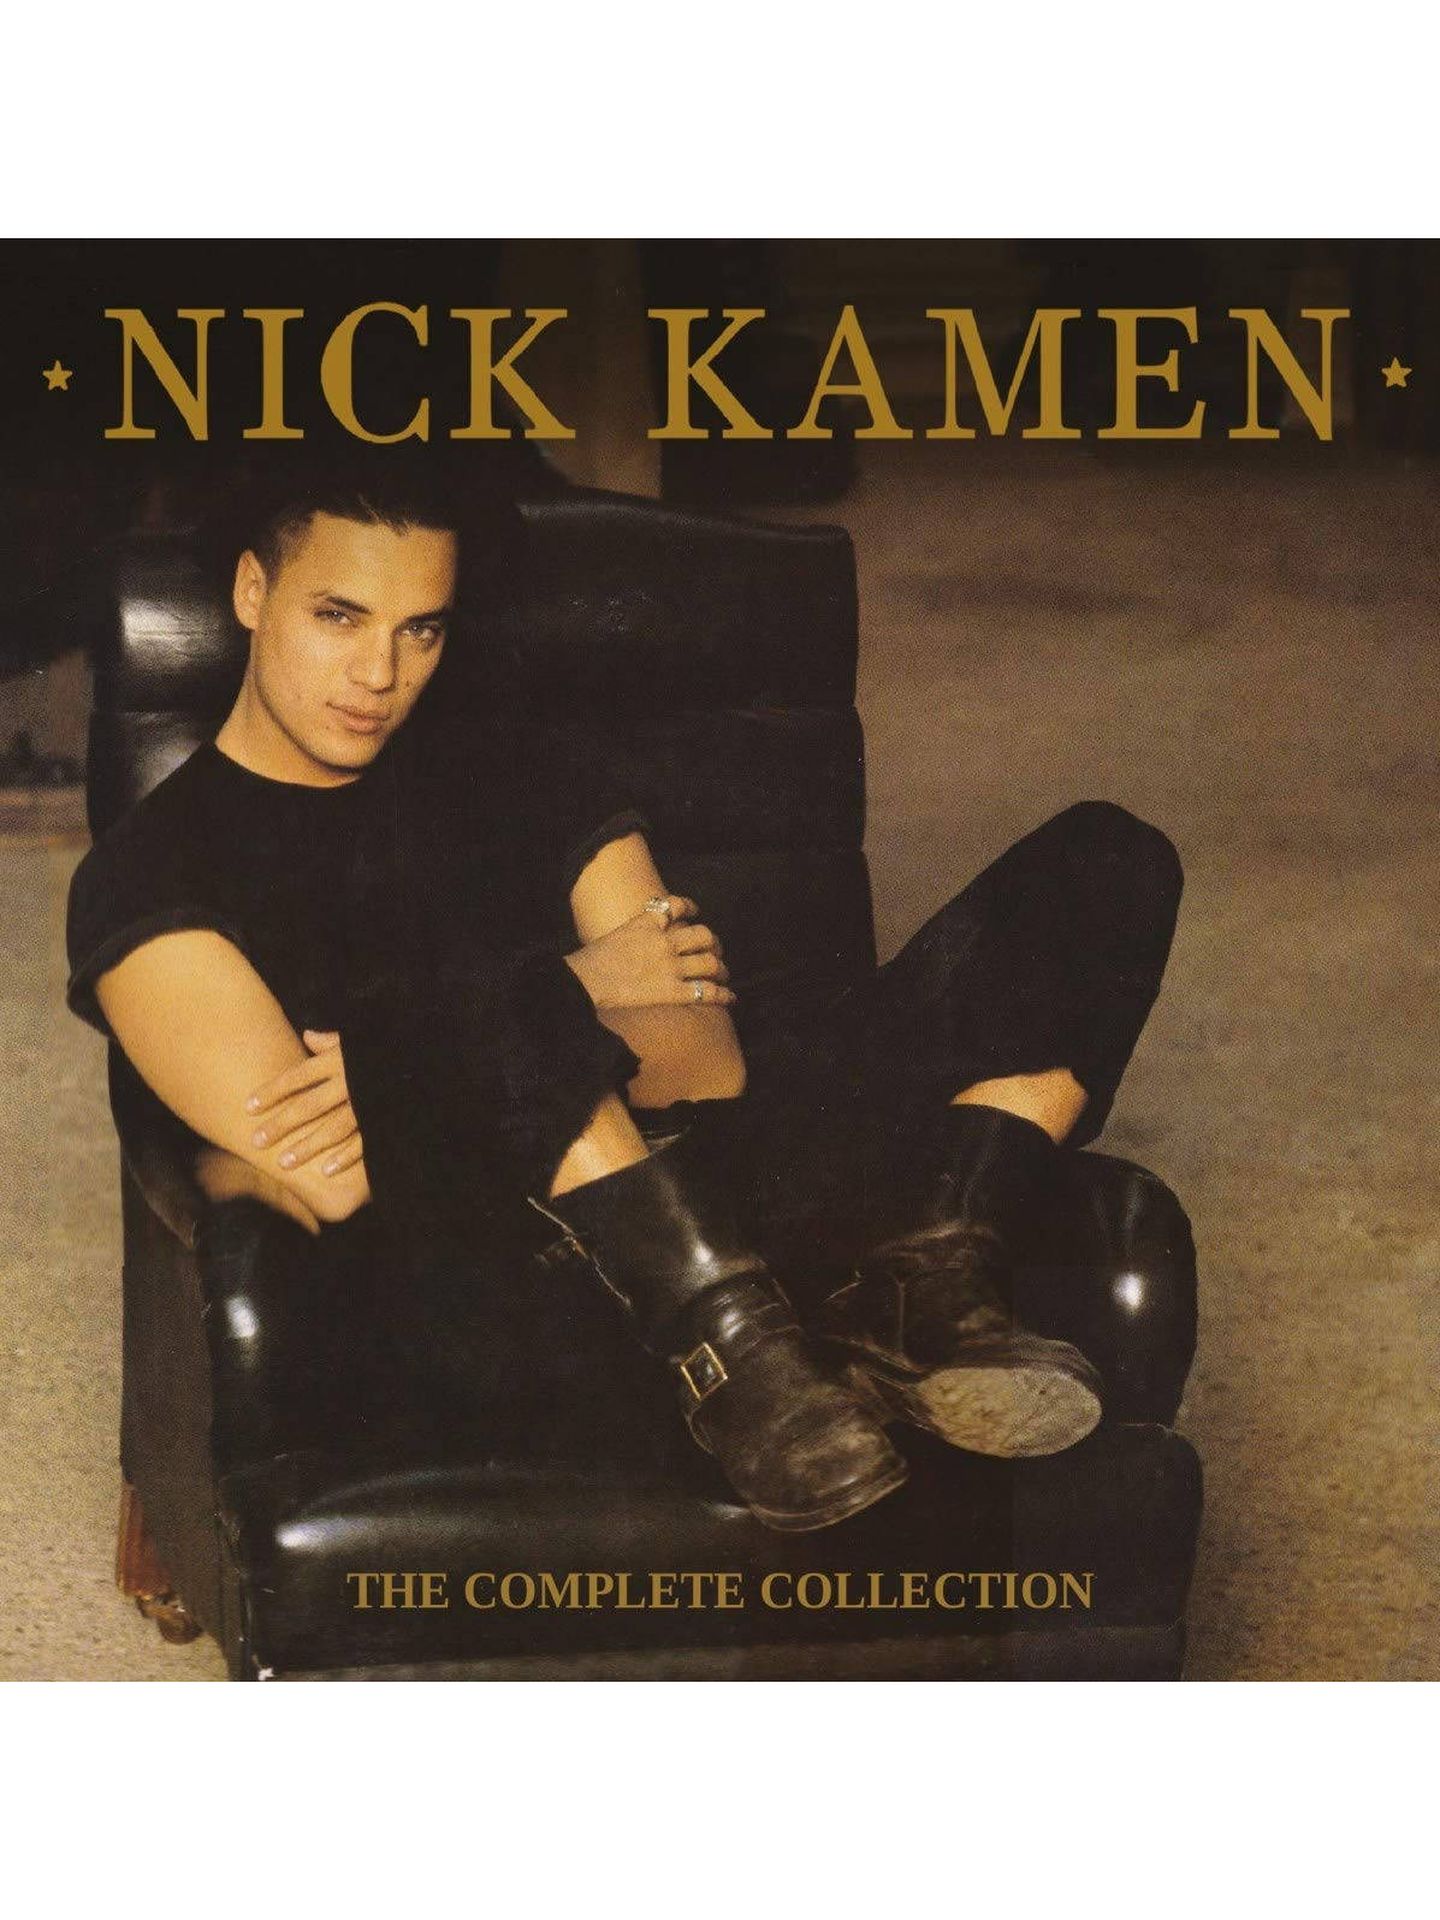 Portada de un recopilatorio musical de Nick Kamen. (Warner Bros. Records y WEA)